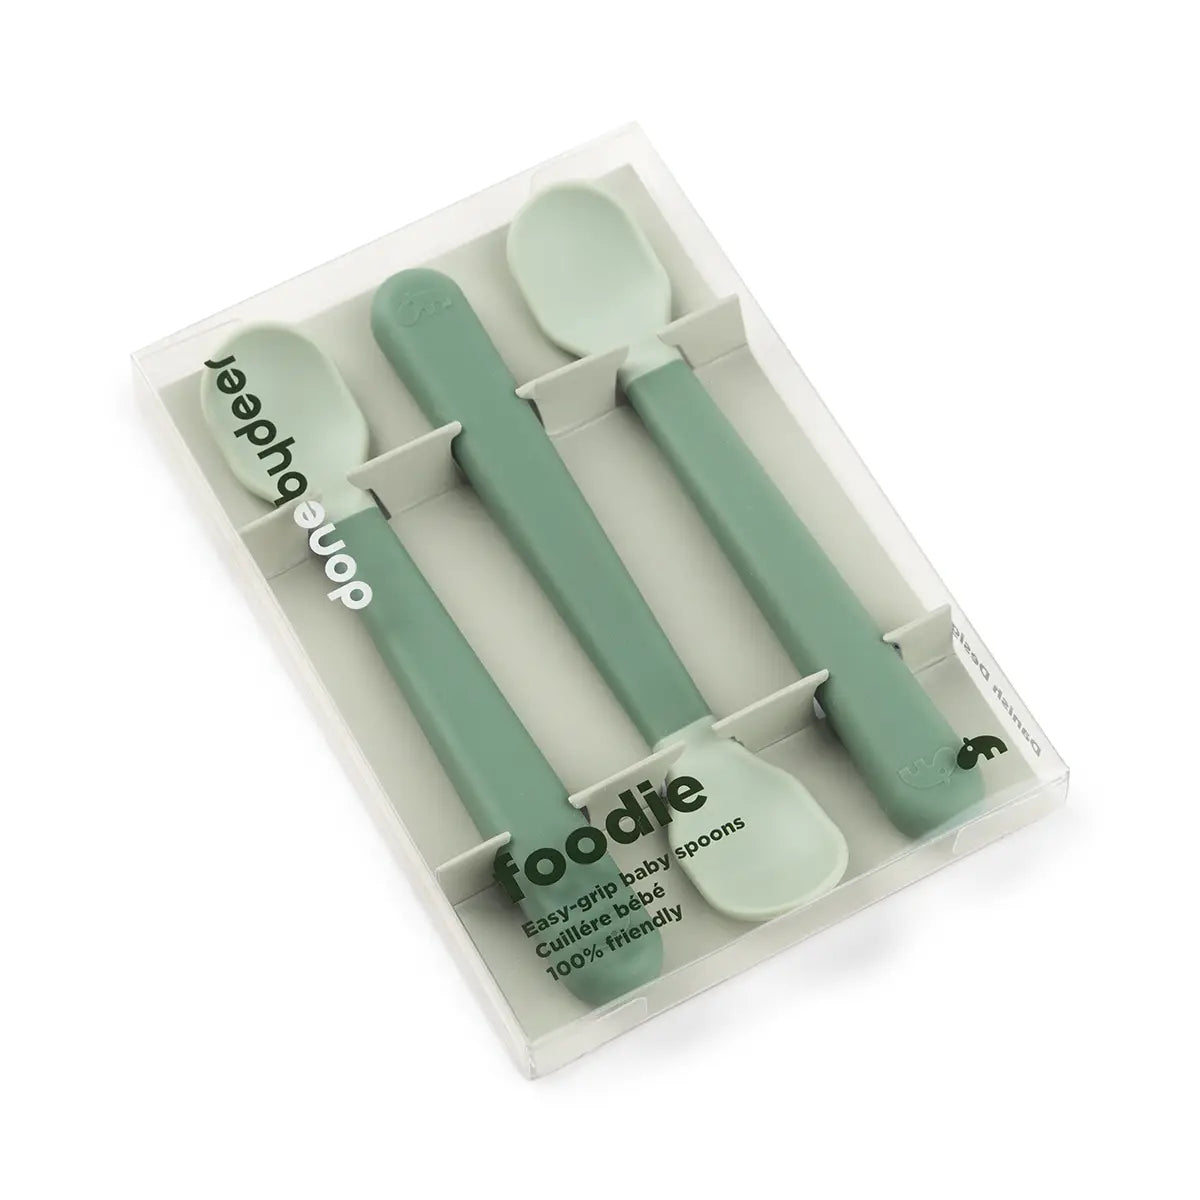 Foodie easy-grip baby spoon 3-pack - Green